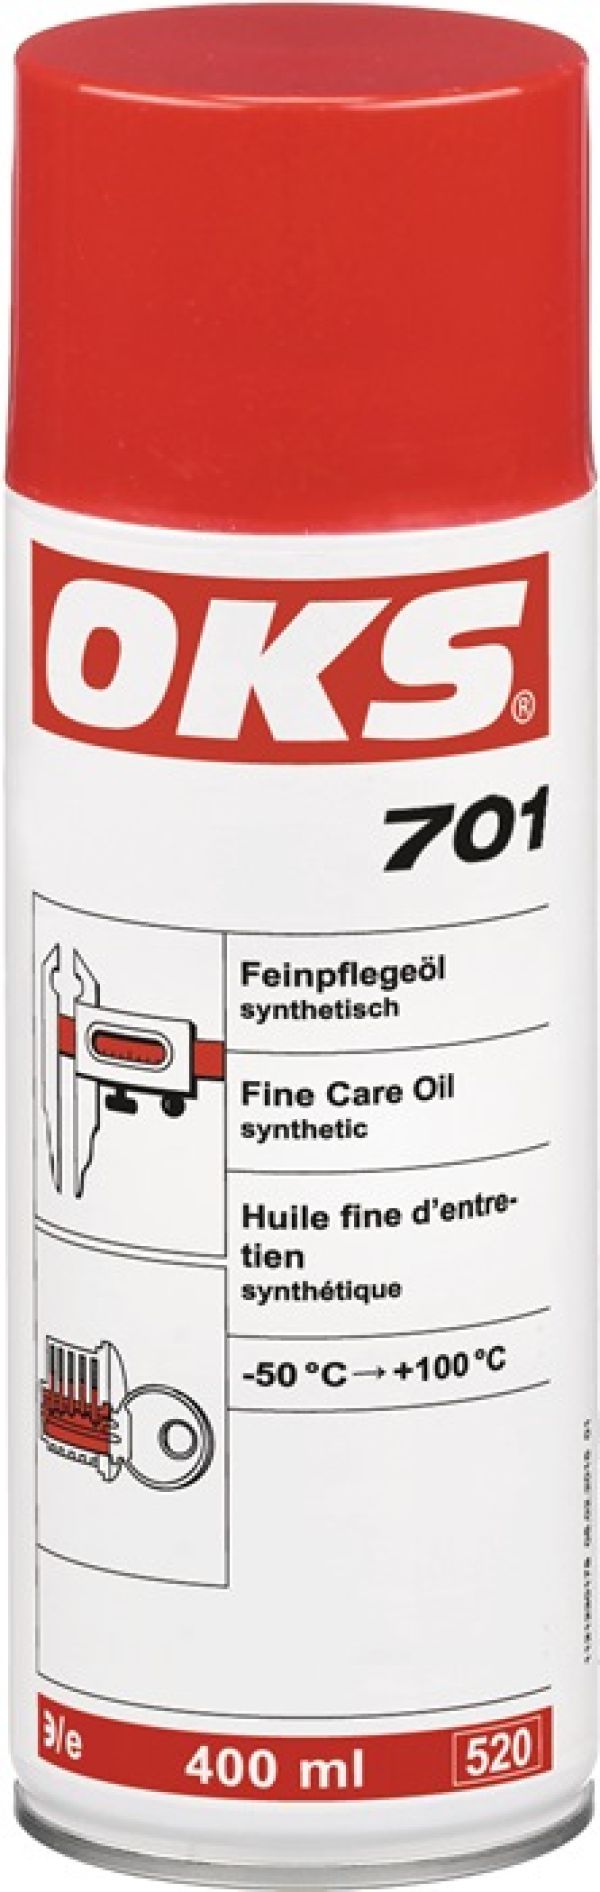 Feinpflegeöl,vollsynthetisch OKS 701 400ml Spraydose OKS